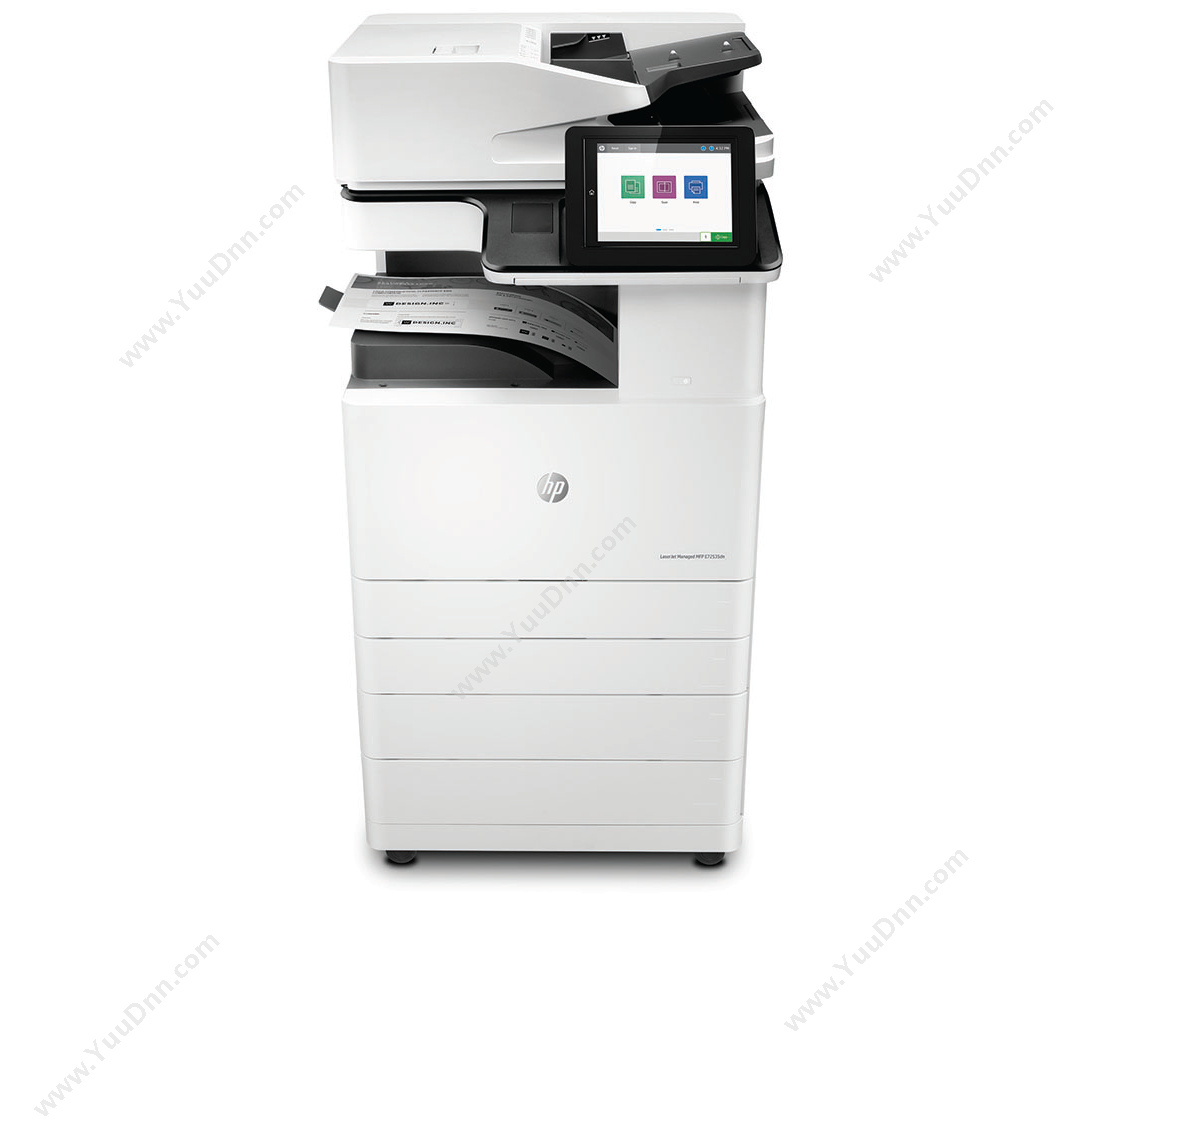 惠普 HPA3X3A66AE72535dn(带服务)激光复合打印机